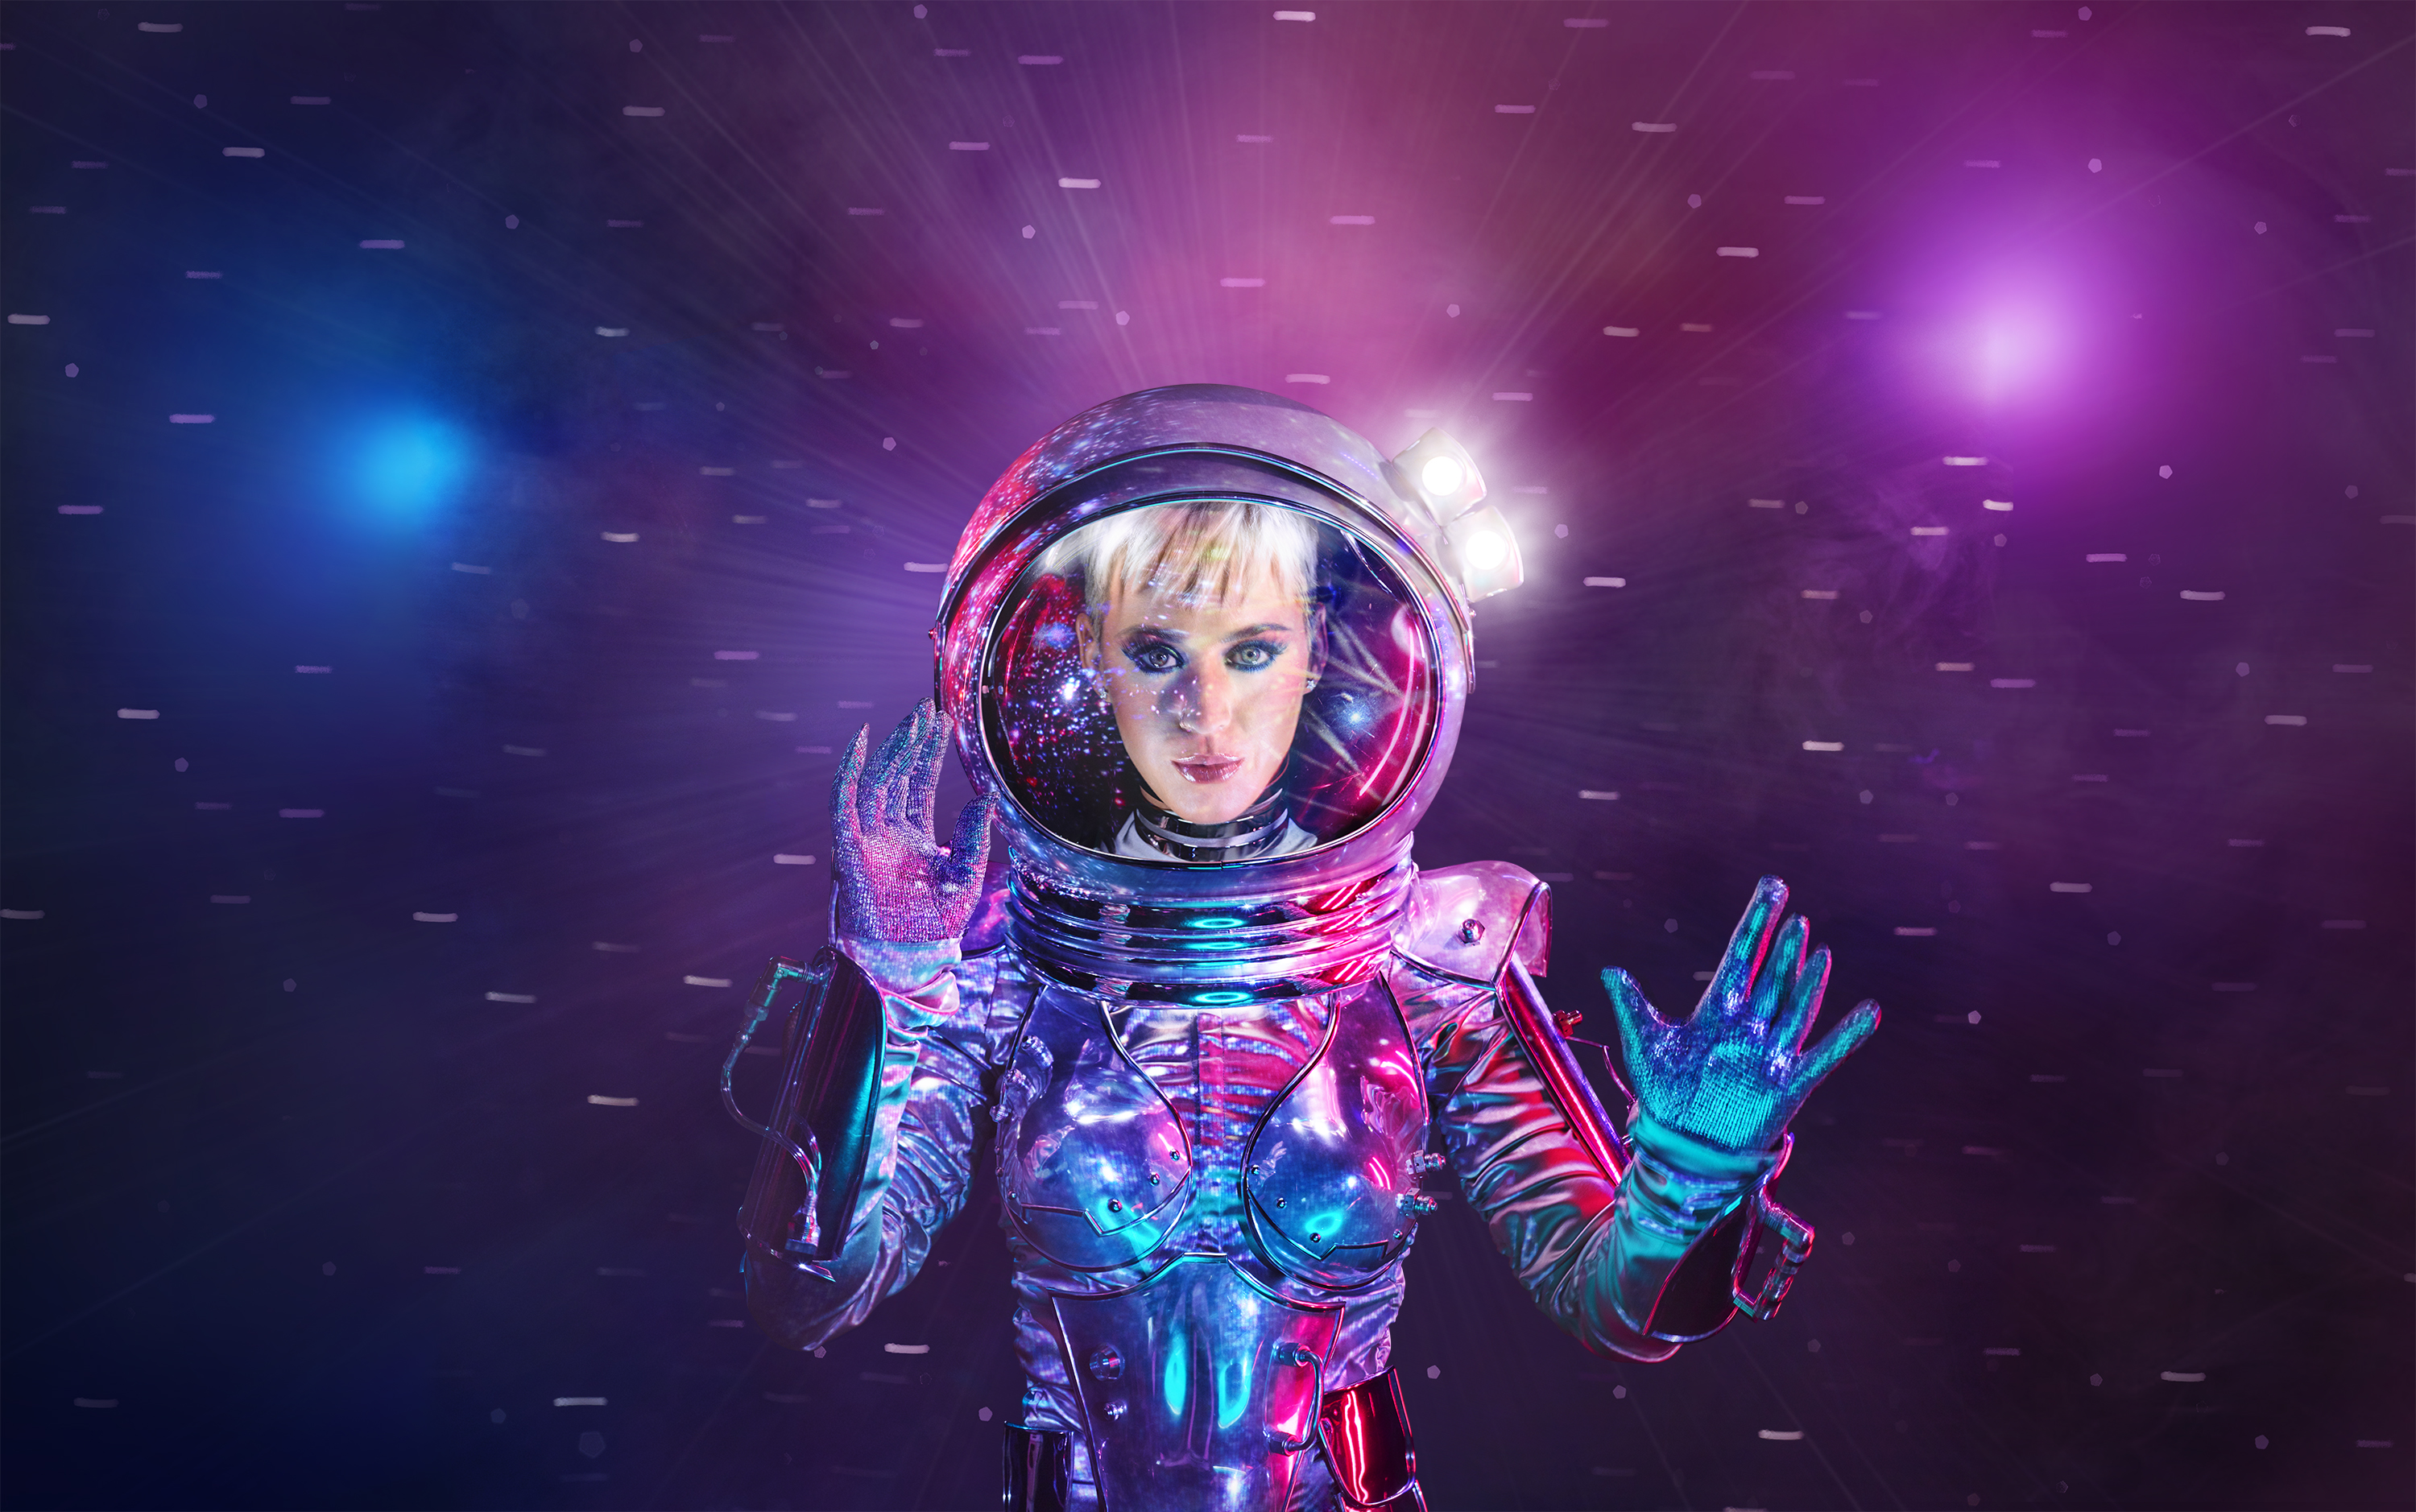 Descarga gratuita de fondo de pantalla para móvil de Música, Katy Perry, Astronauta.